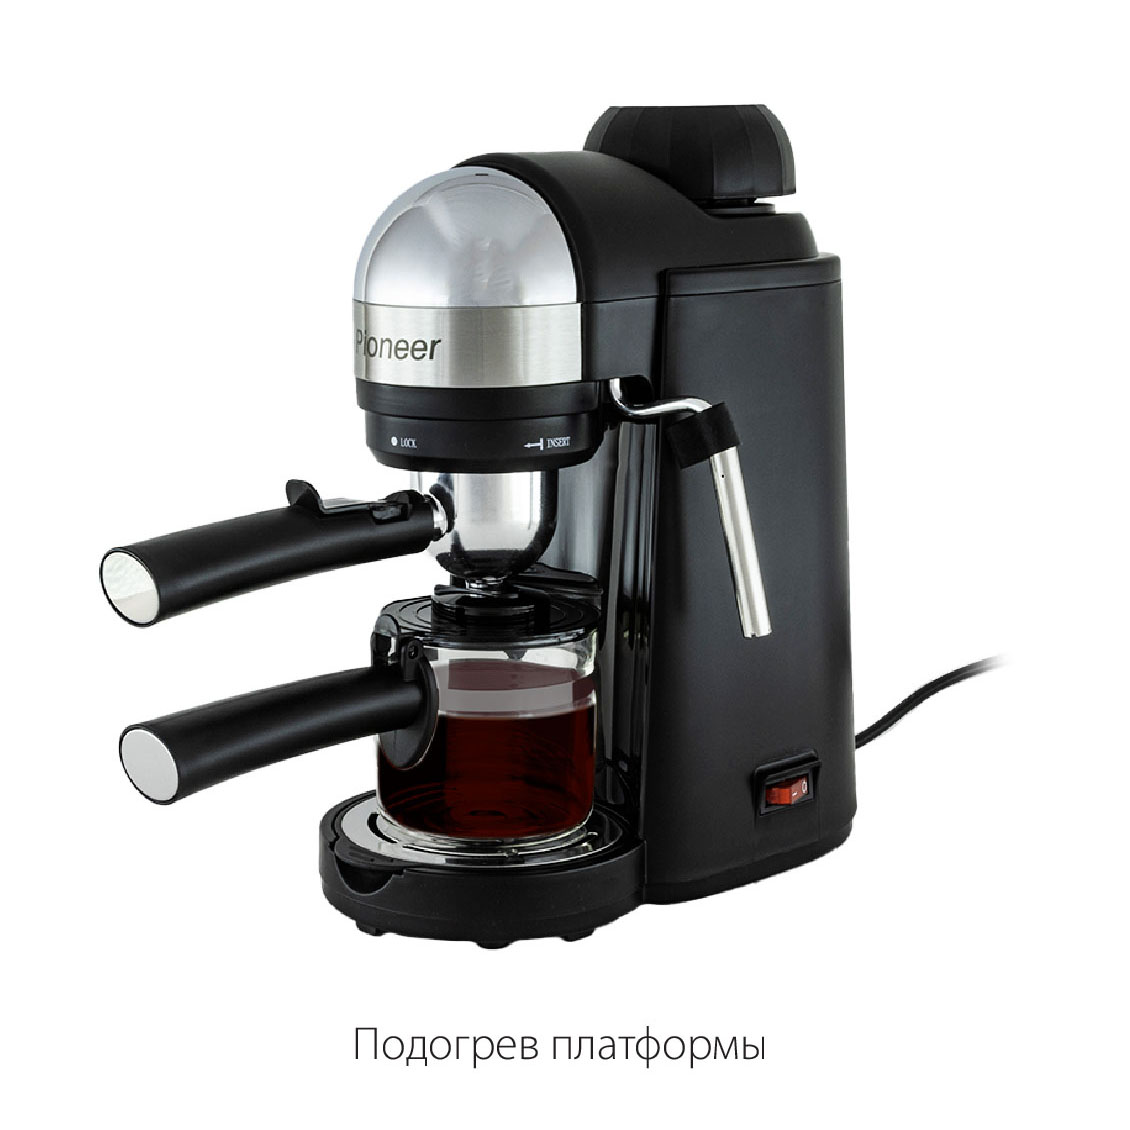 Рожковая кофеварка Pioneer CM106P